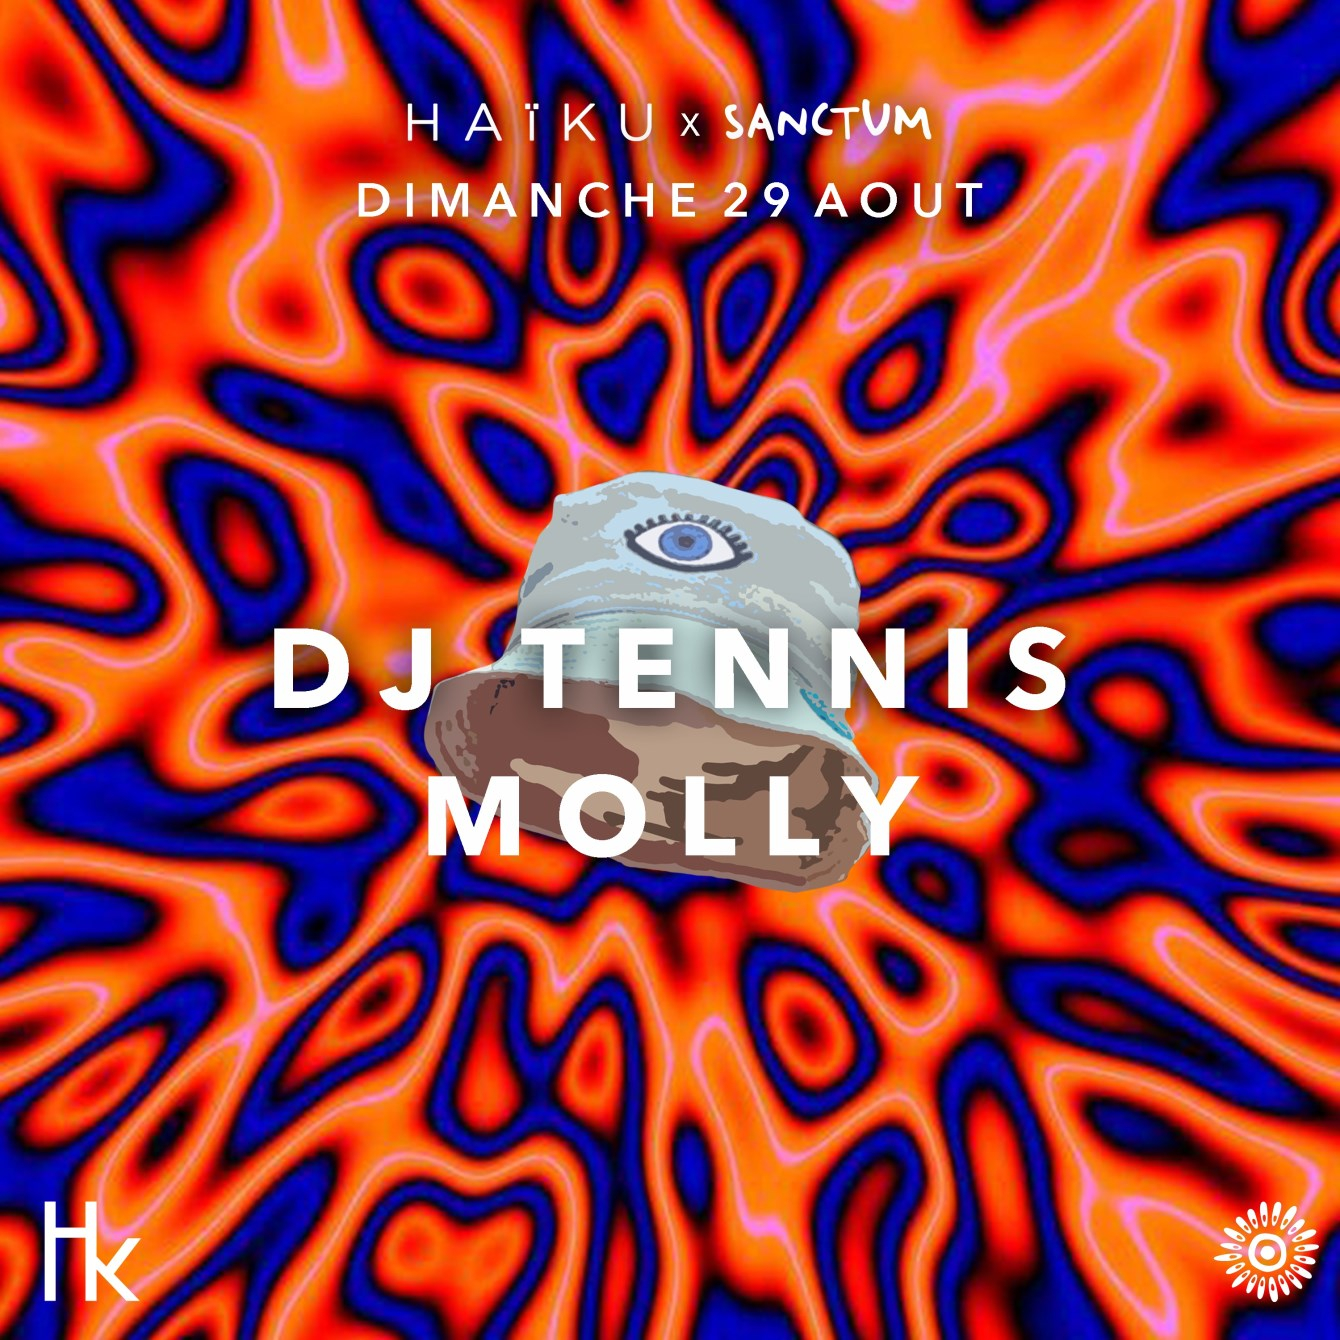 Dj Tennis Molly At H A I K U X Sanctum At Pavillon D Armenonville Paris Ra